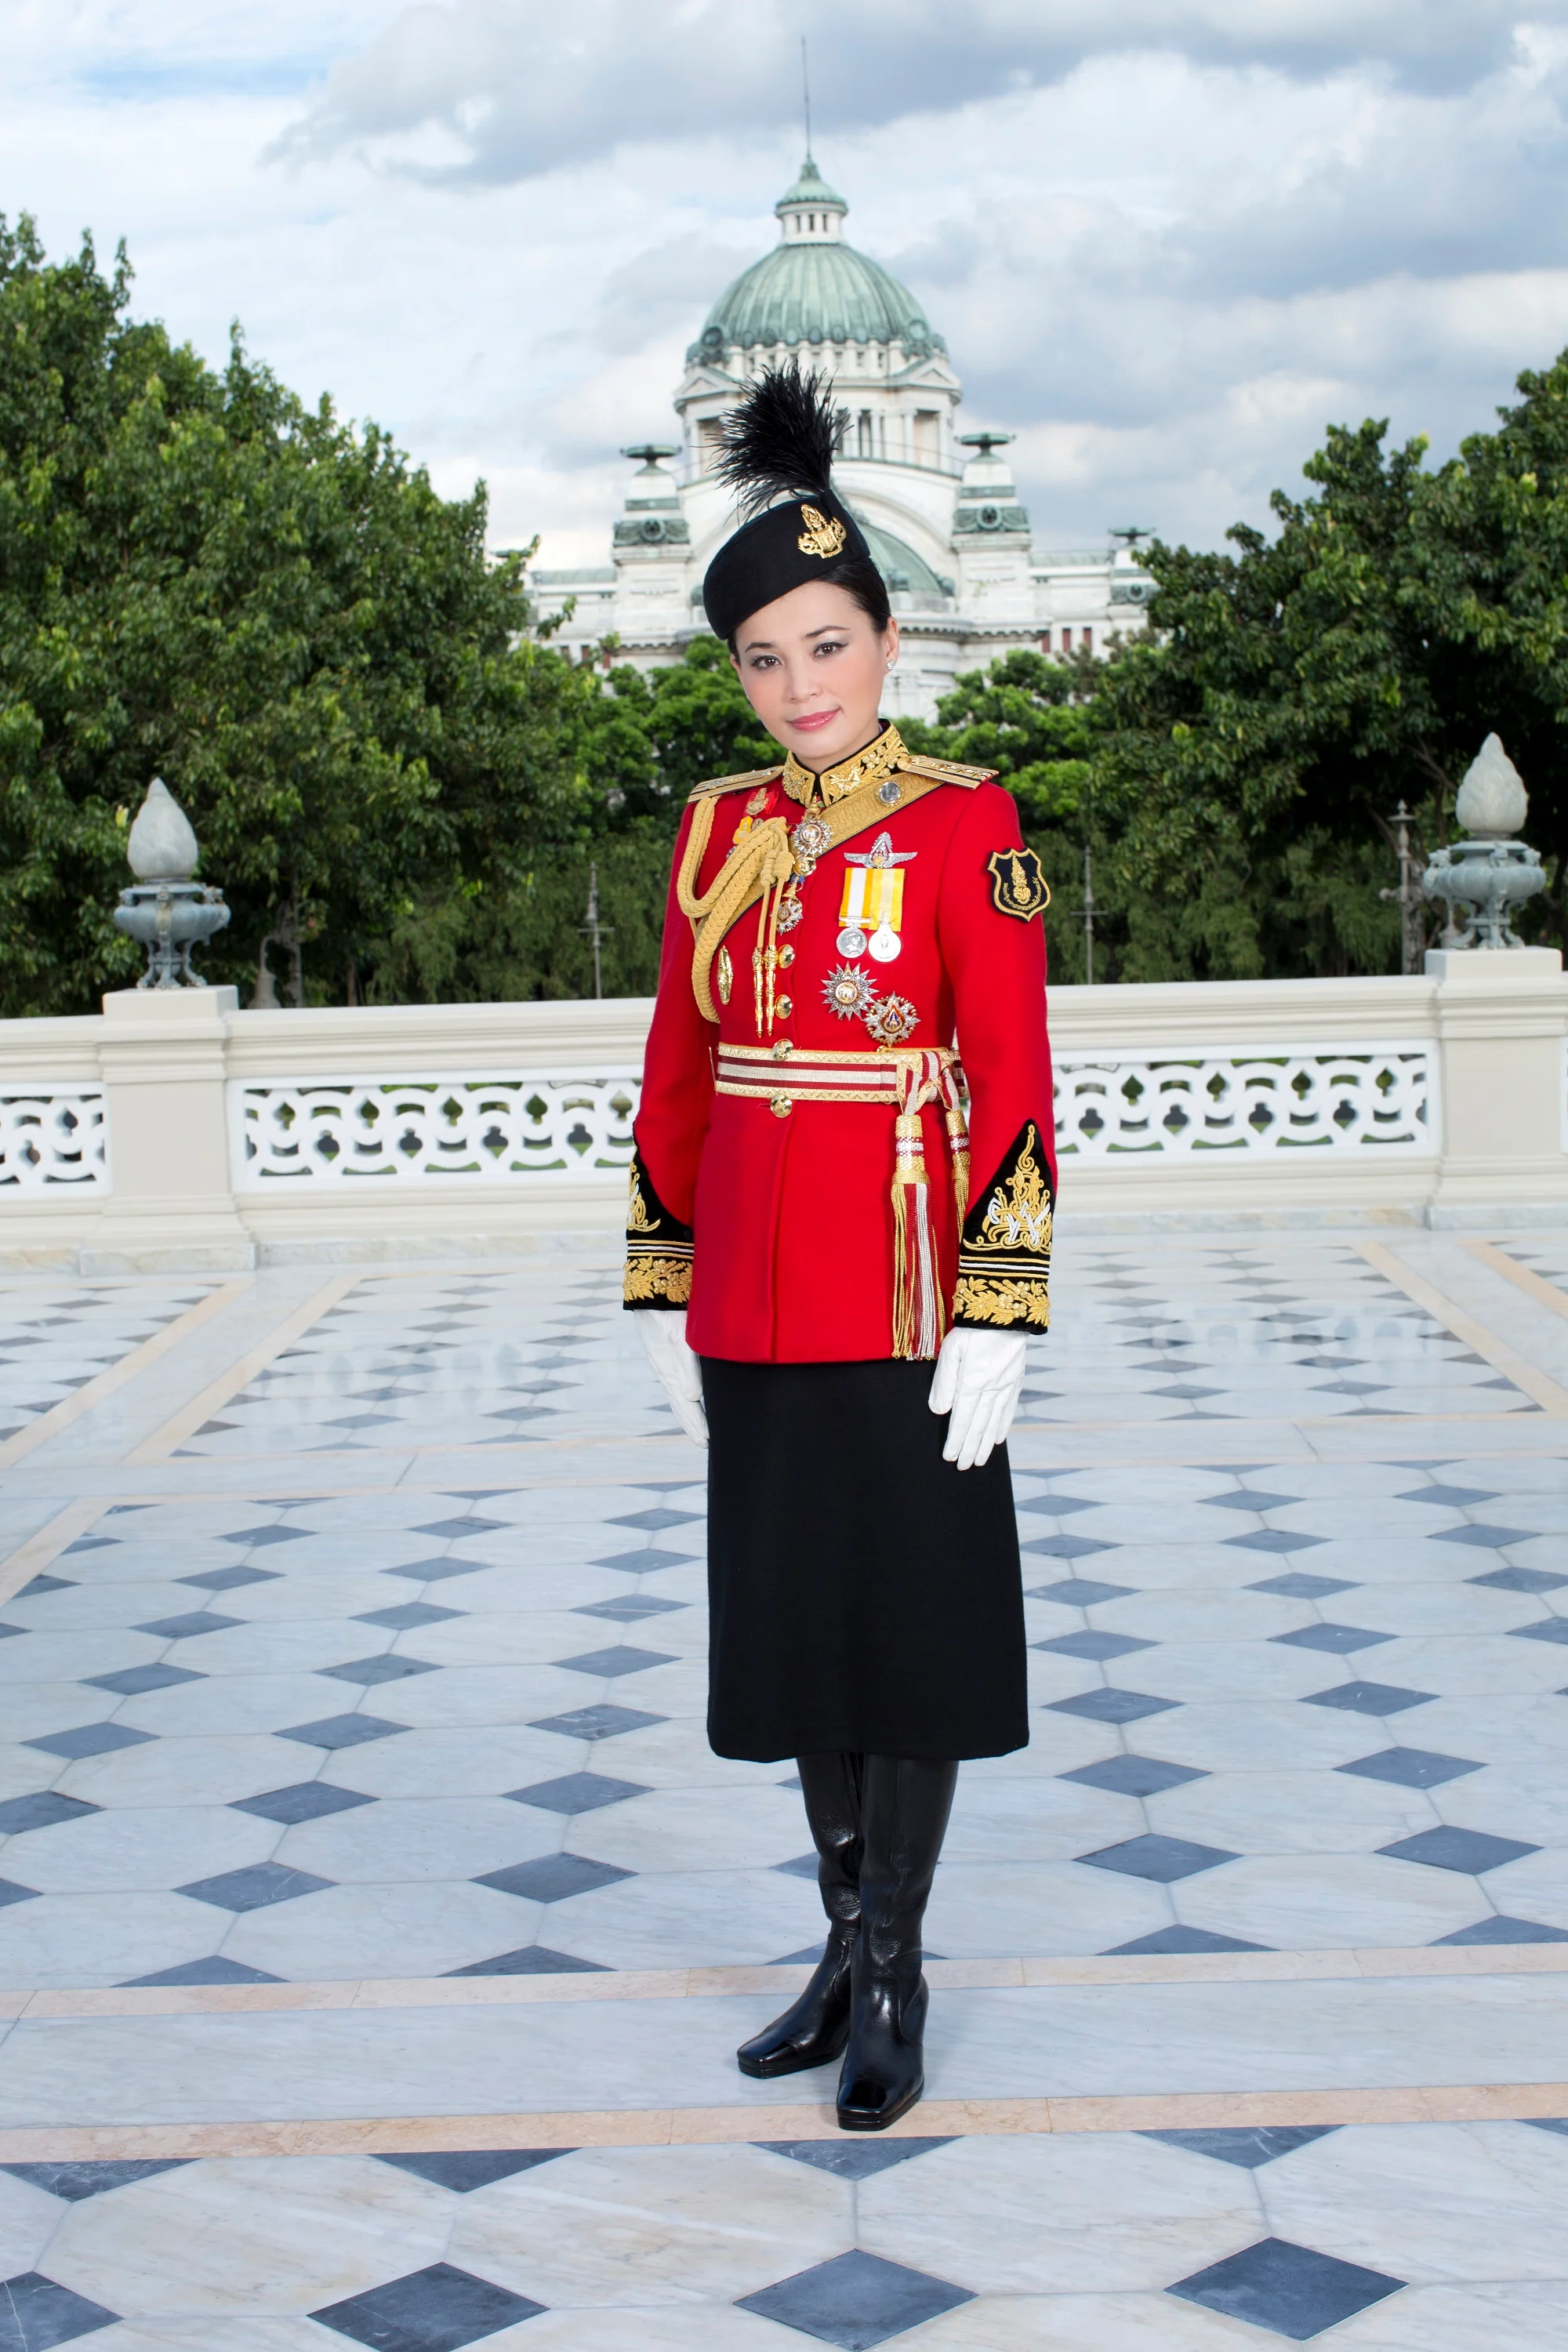 З’явилися перші офіційні фото королеви Таїланду, і вони зовсім не схожі на портрет Меган - фото 434521